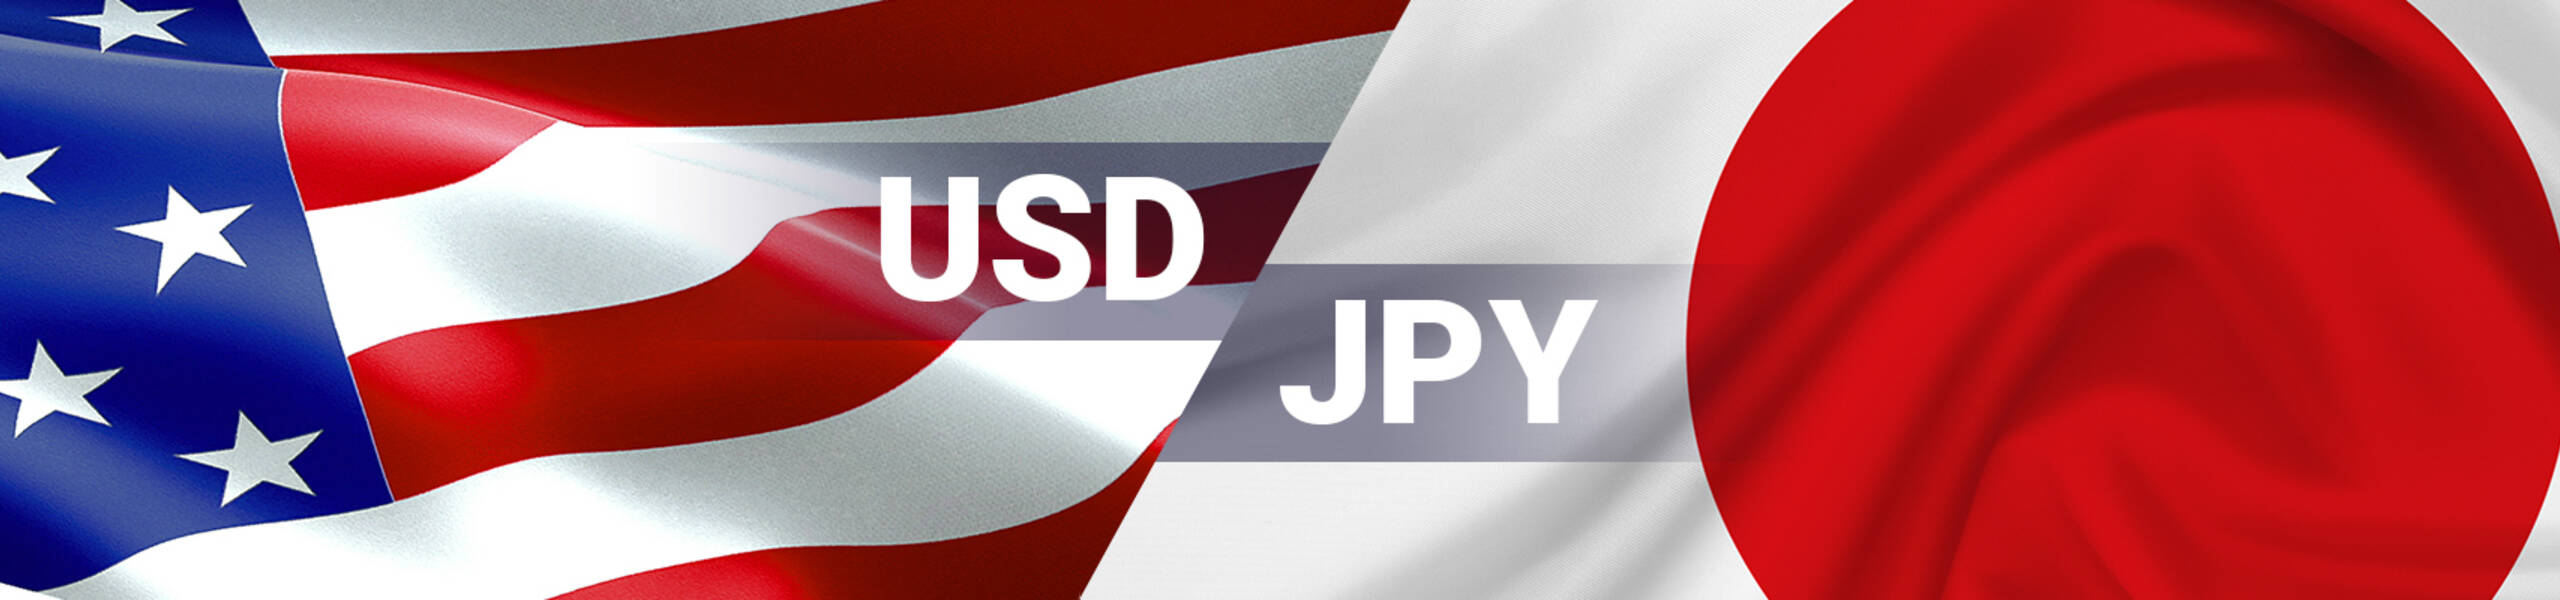 USD/JPY 週間マーケットレポート 2018/07/09 ～2018/07/13